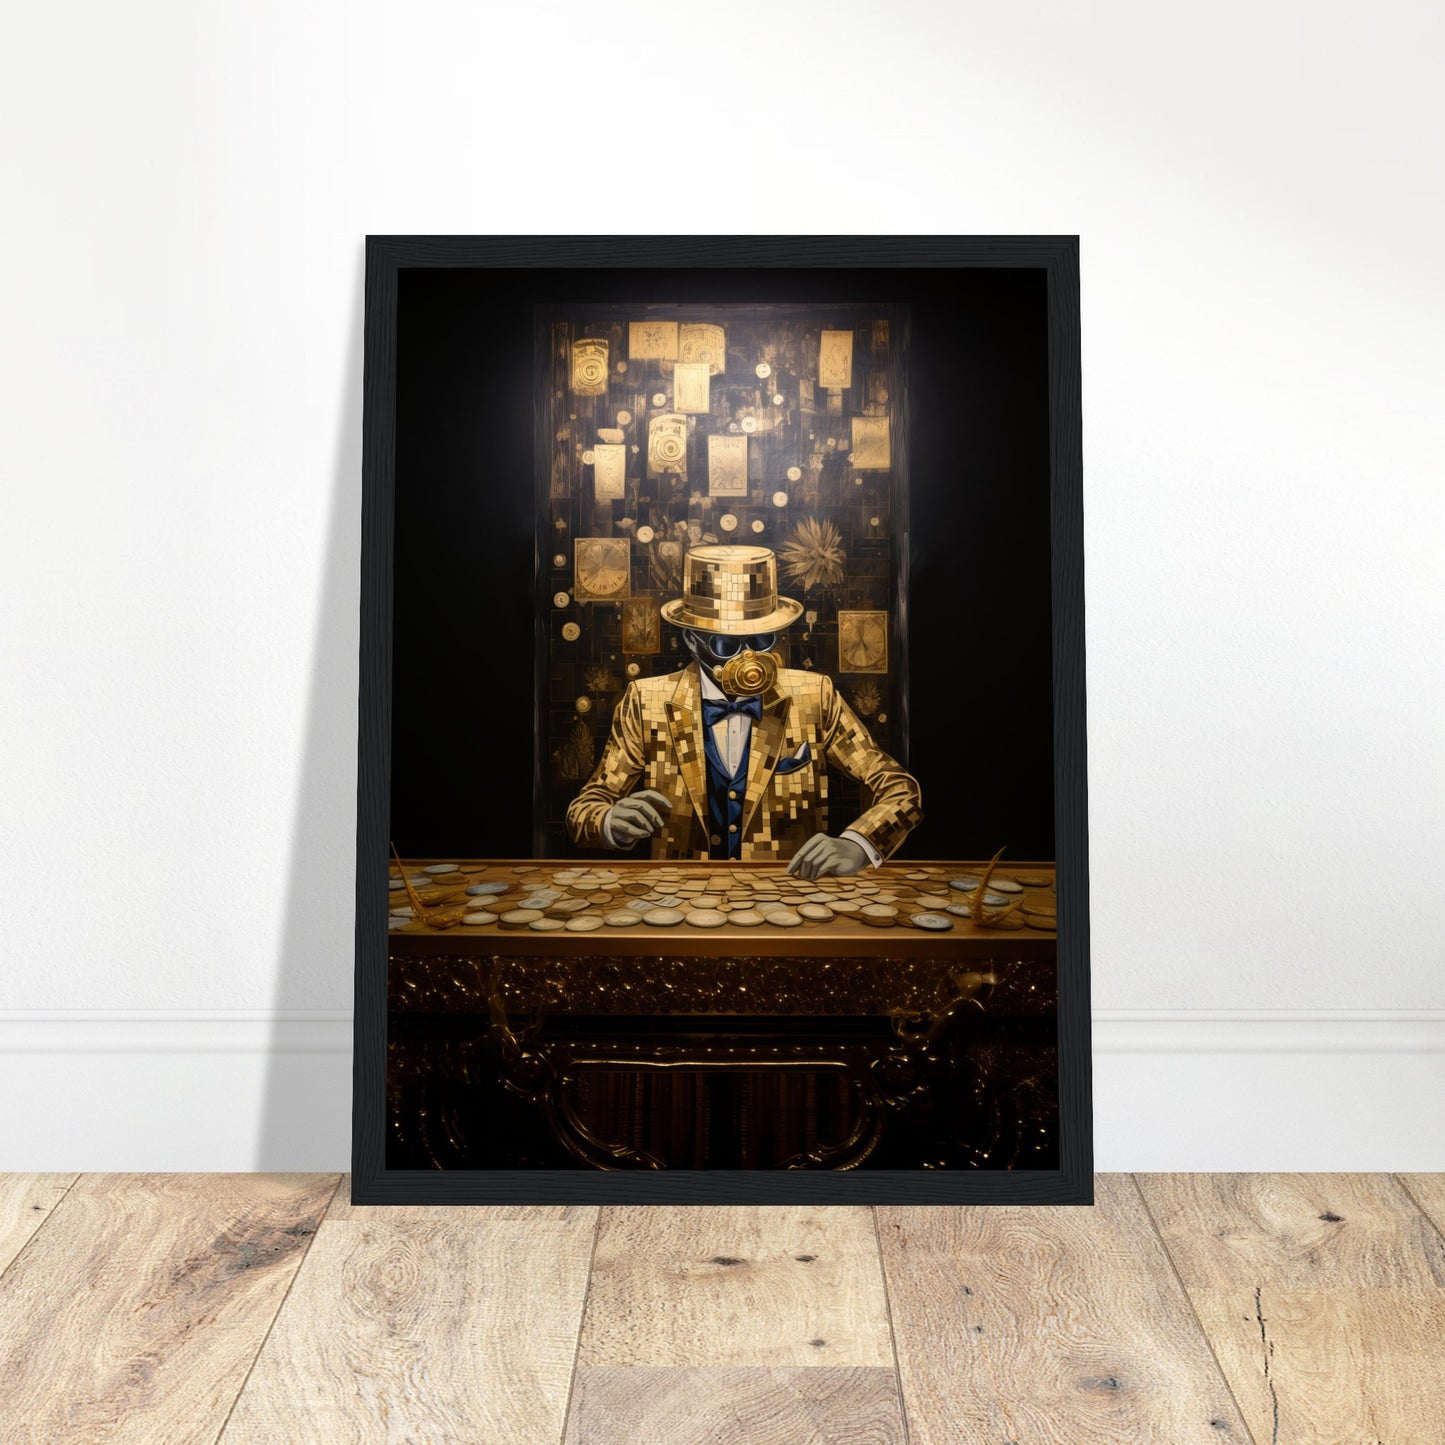 Golden Financier Abstract Artwork - Print Room Ltd White frame 30x40 cm / 12x16"